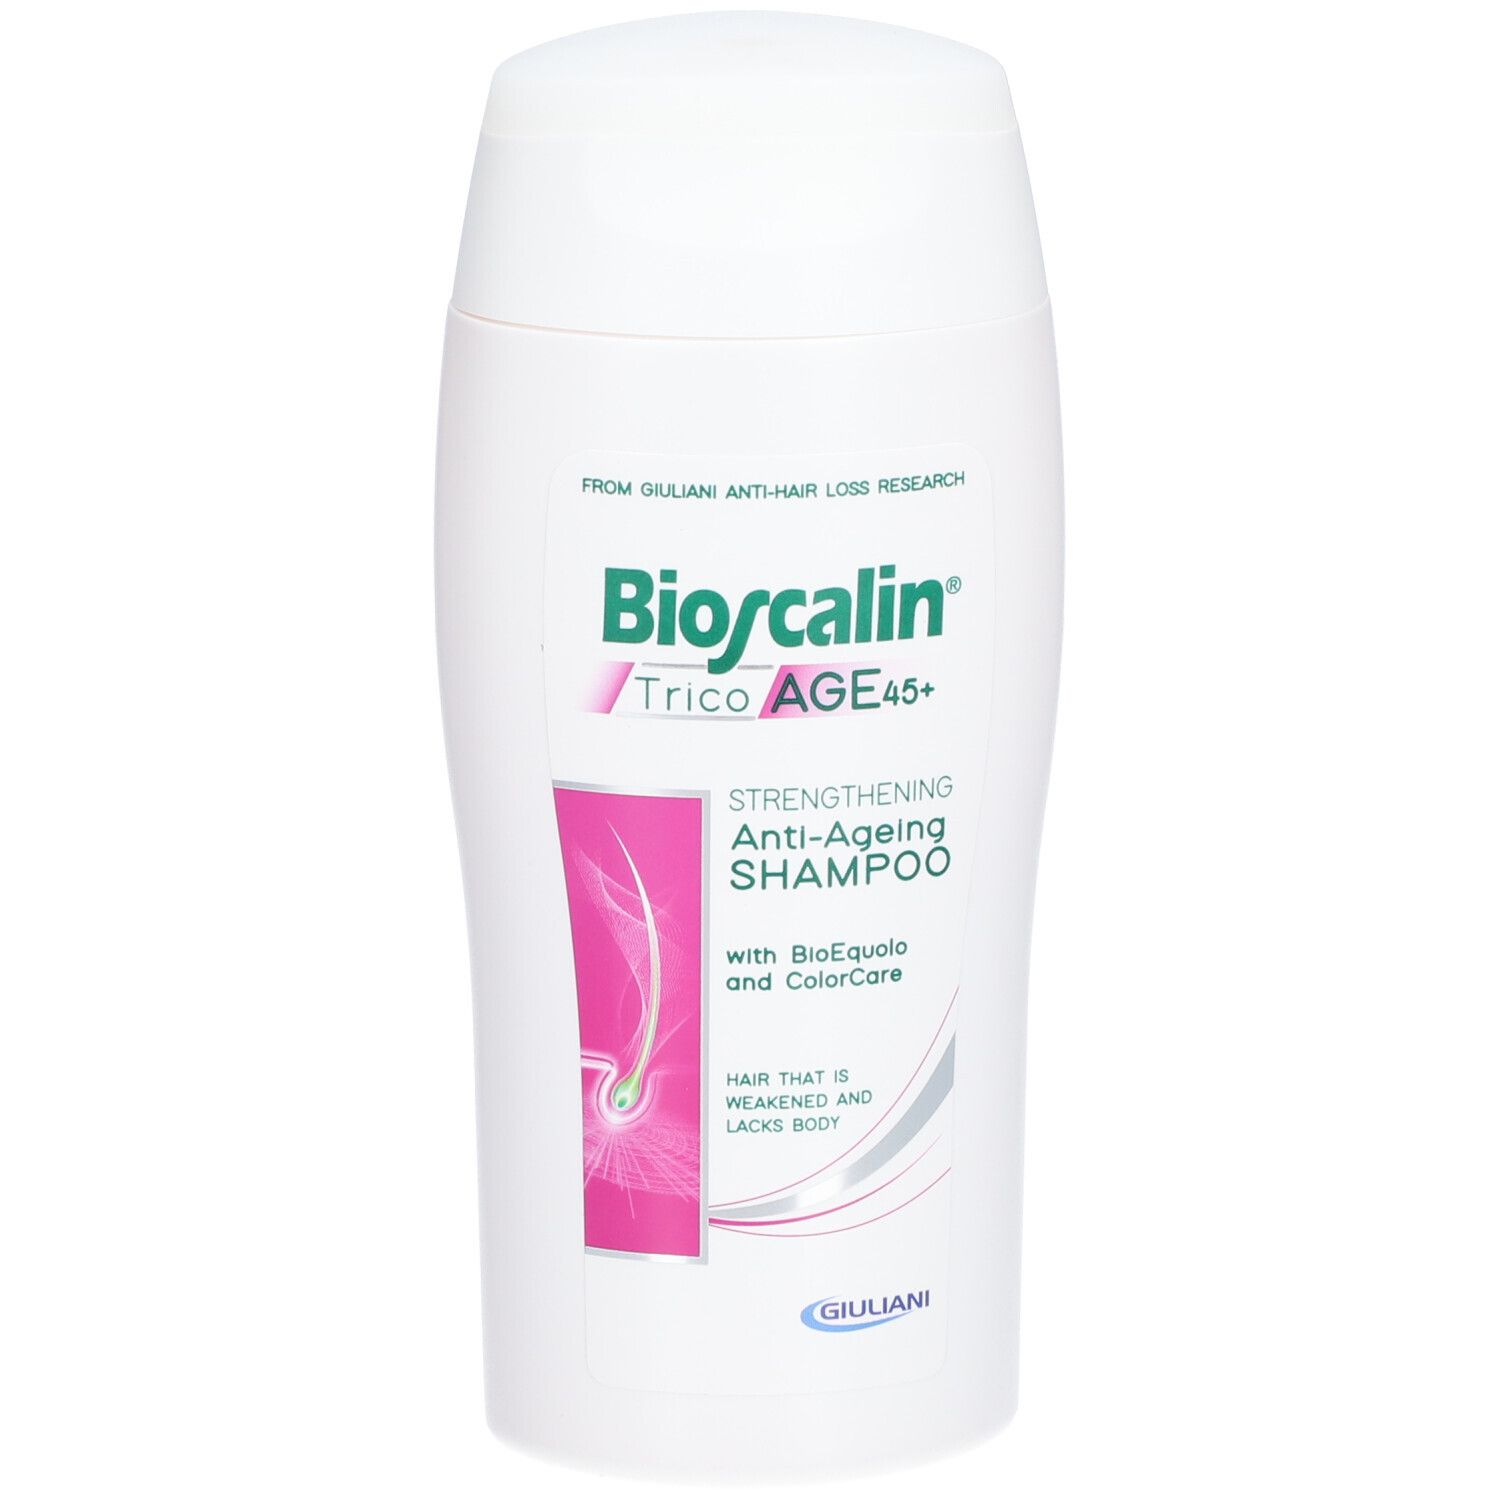 Bioscalin® TricoAGE45+ Shampoo